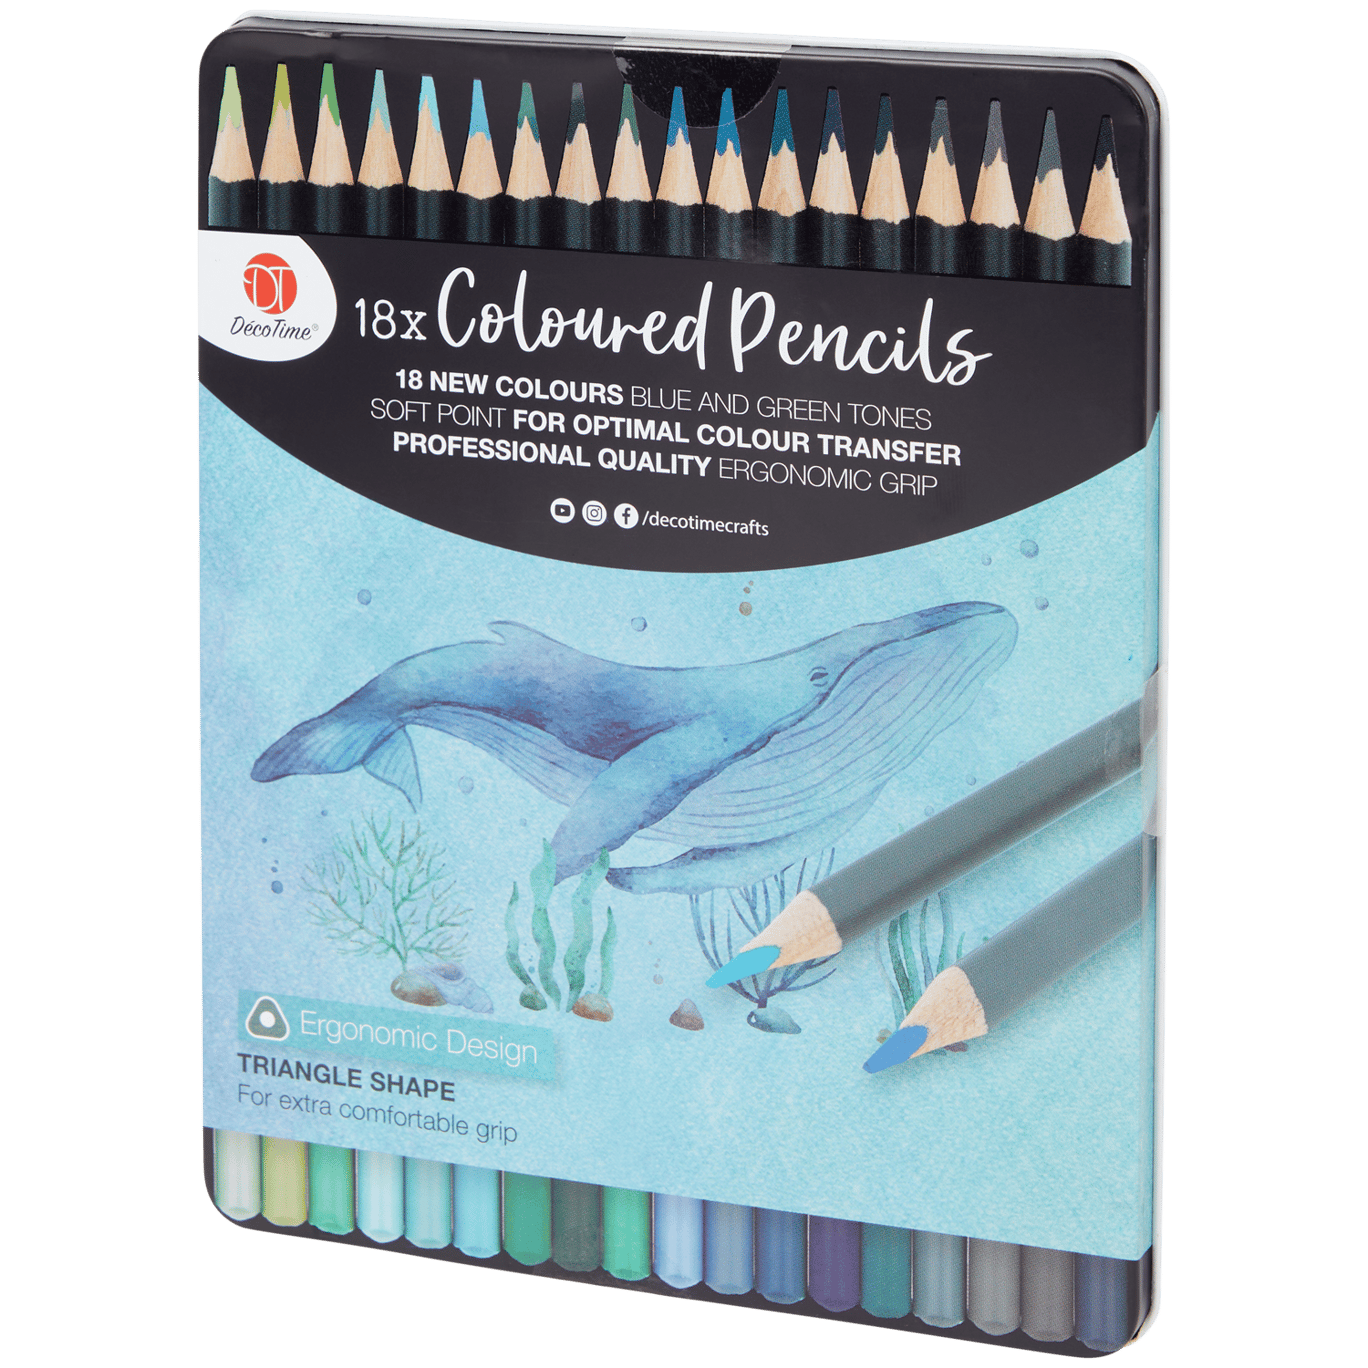 Achetez les premiers crayons de couleurs fleurs de votre enfant !